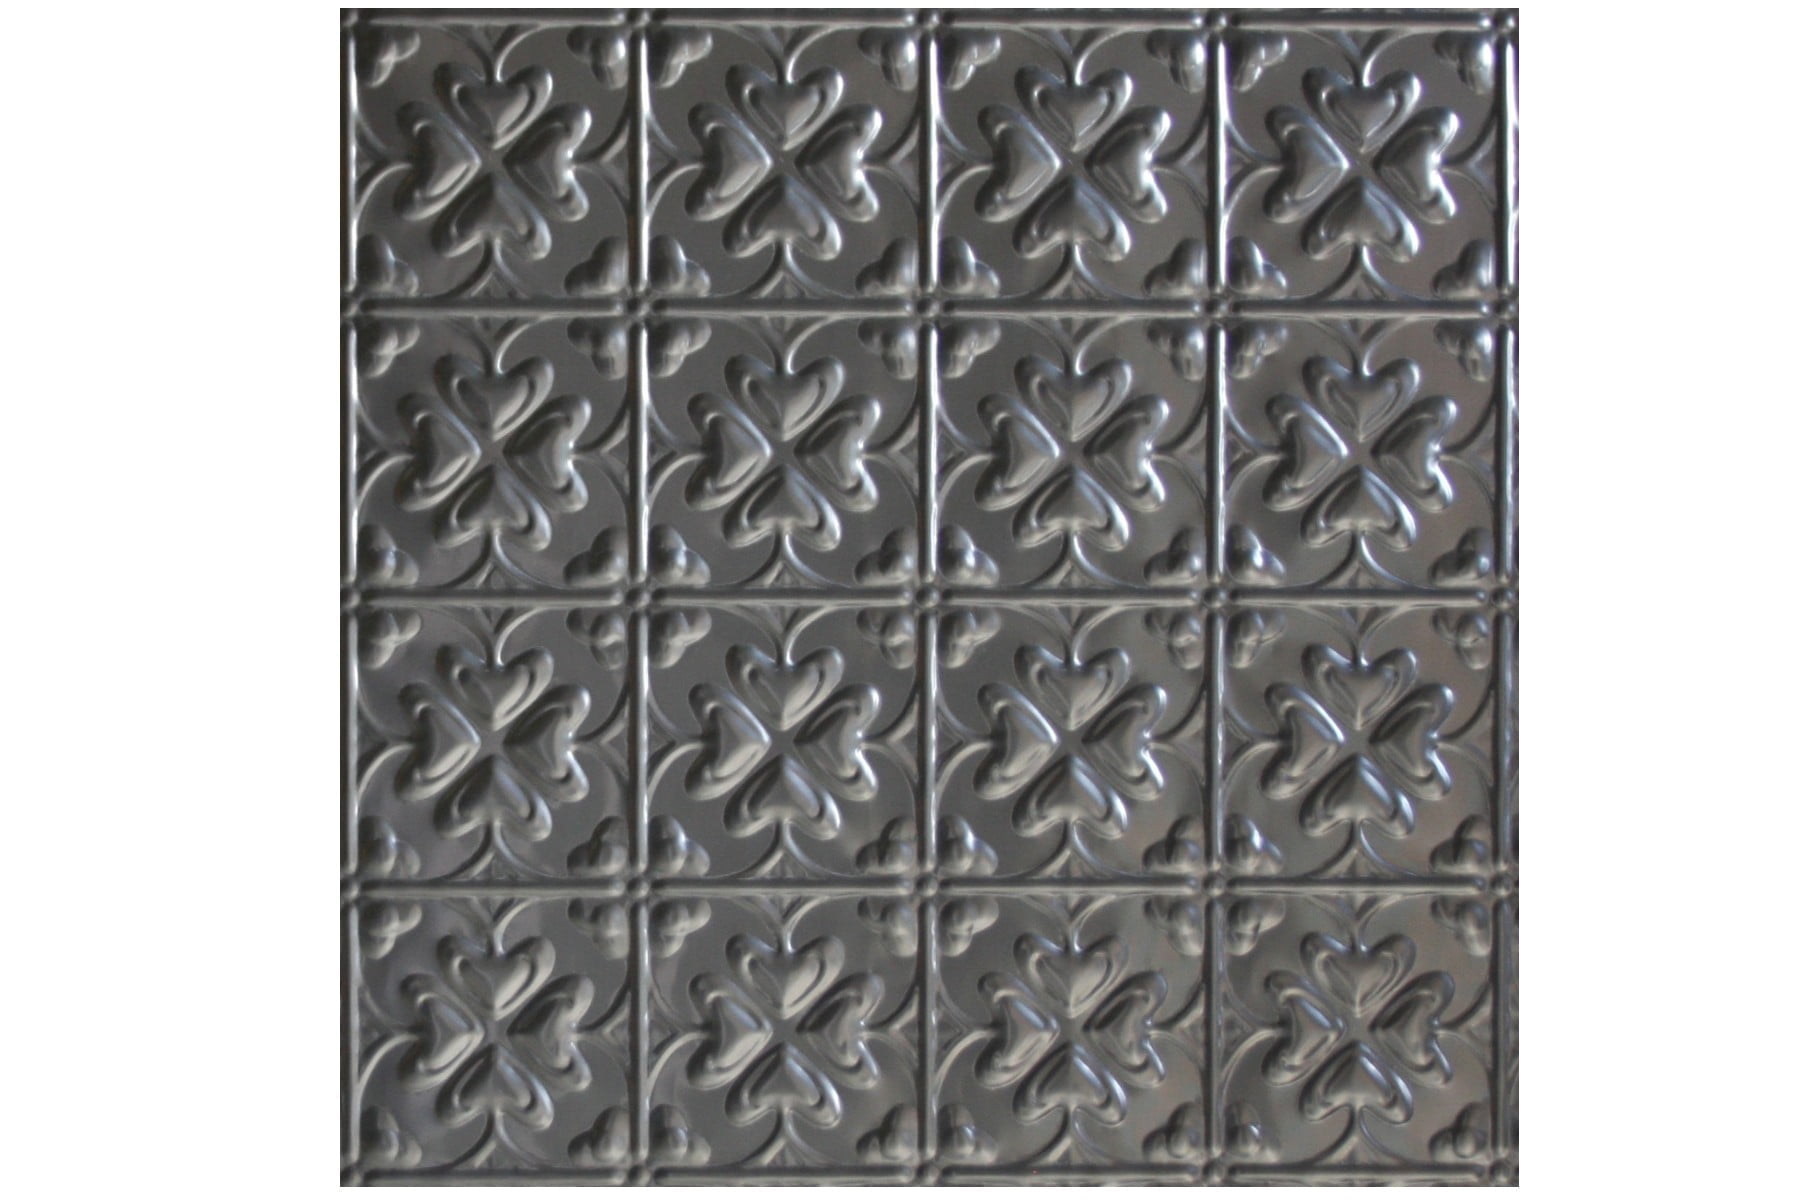 Wunderlich Pressed Metal Panels No 1027 Spades